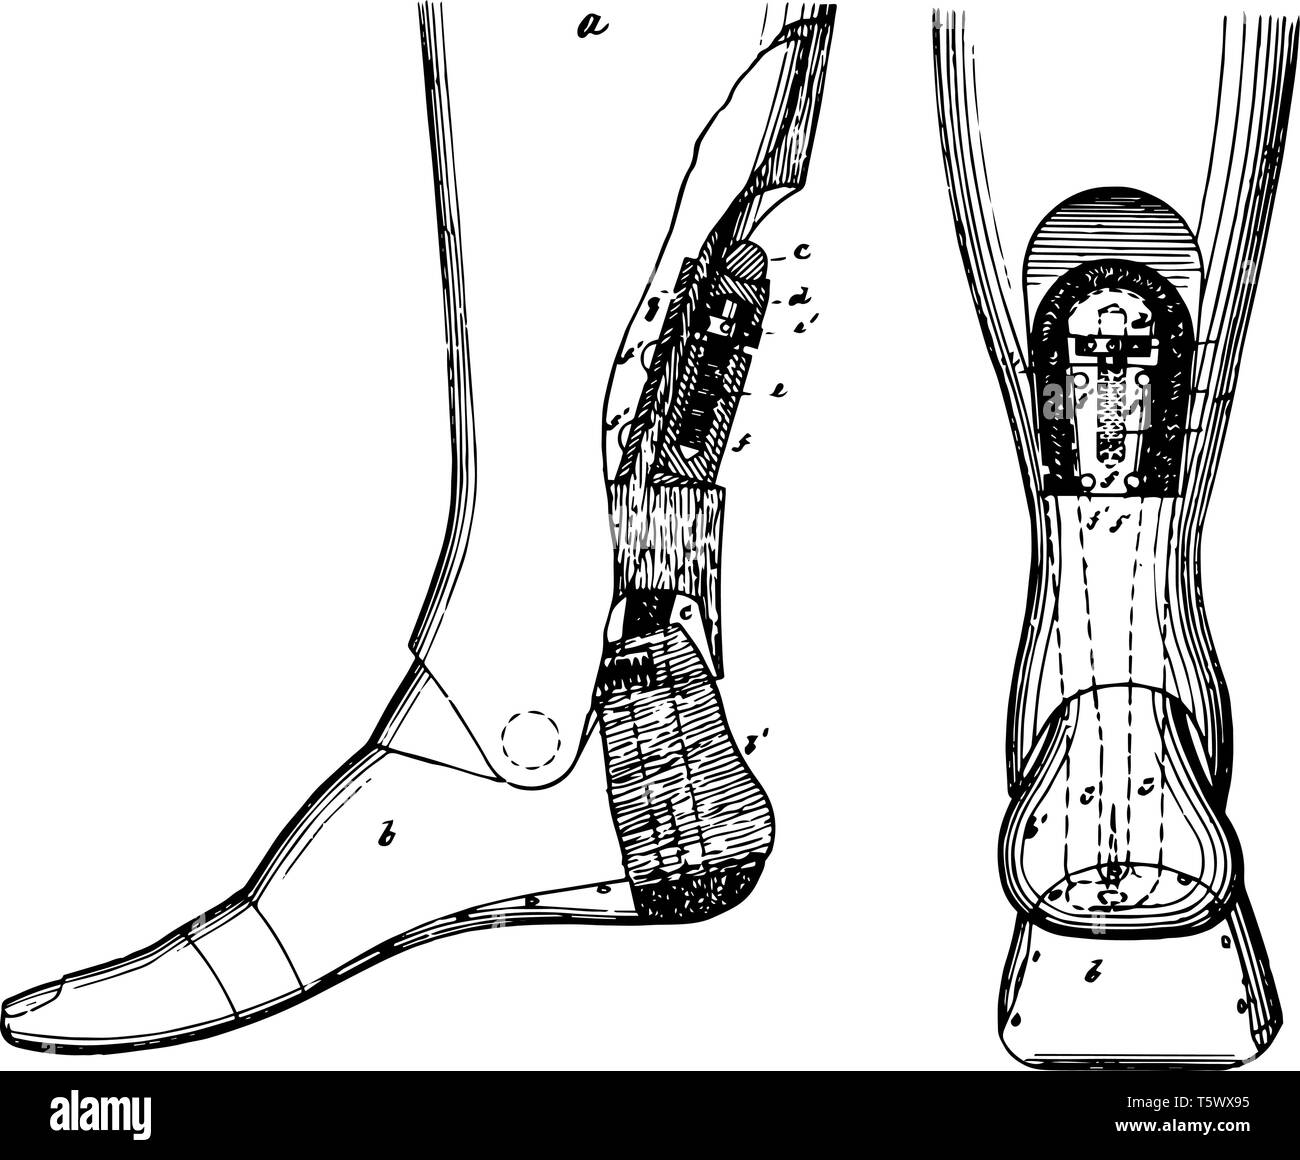 Cette image illustre une jambe artificielle ayant une courbe et la périphérie et soutenu par l'extrémité supérieure d'une vis qui exploite le même double il Illustration de Vecteur